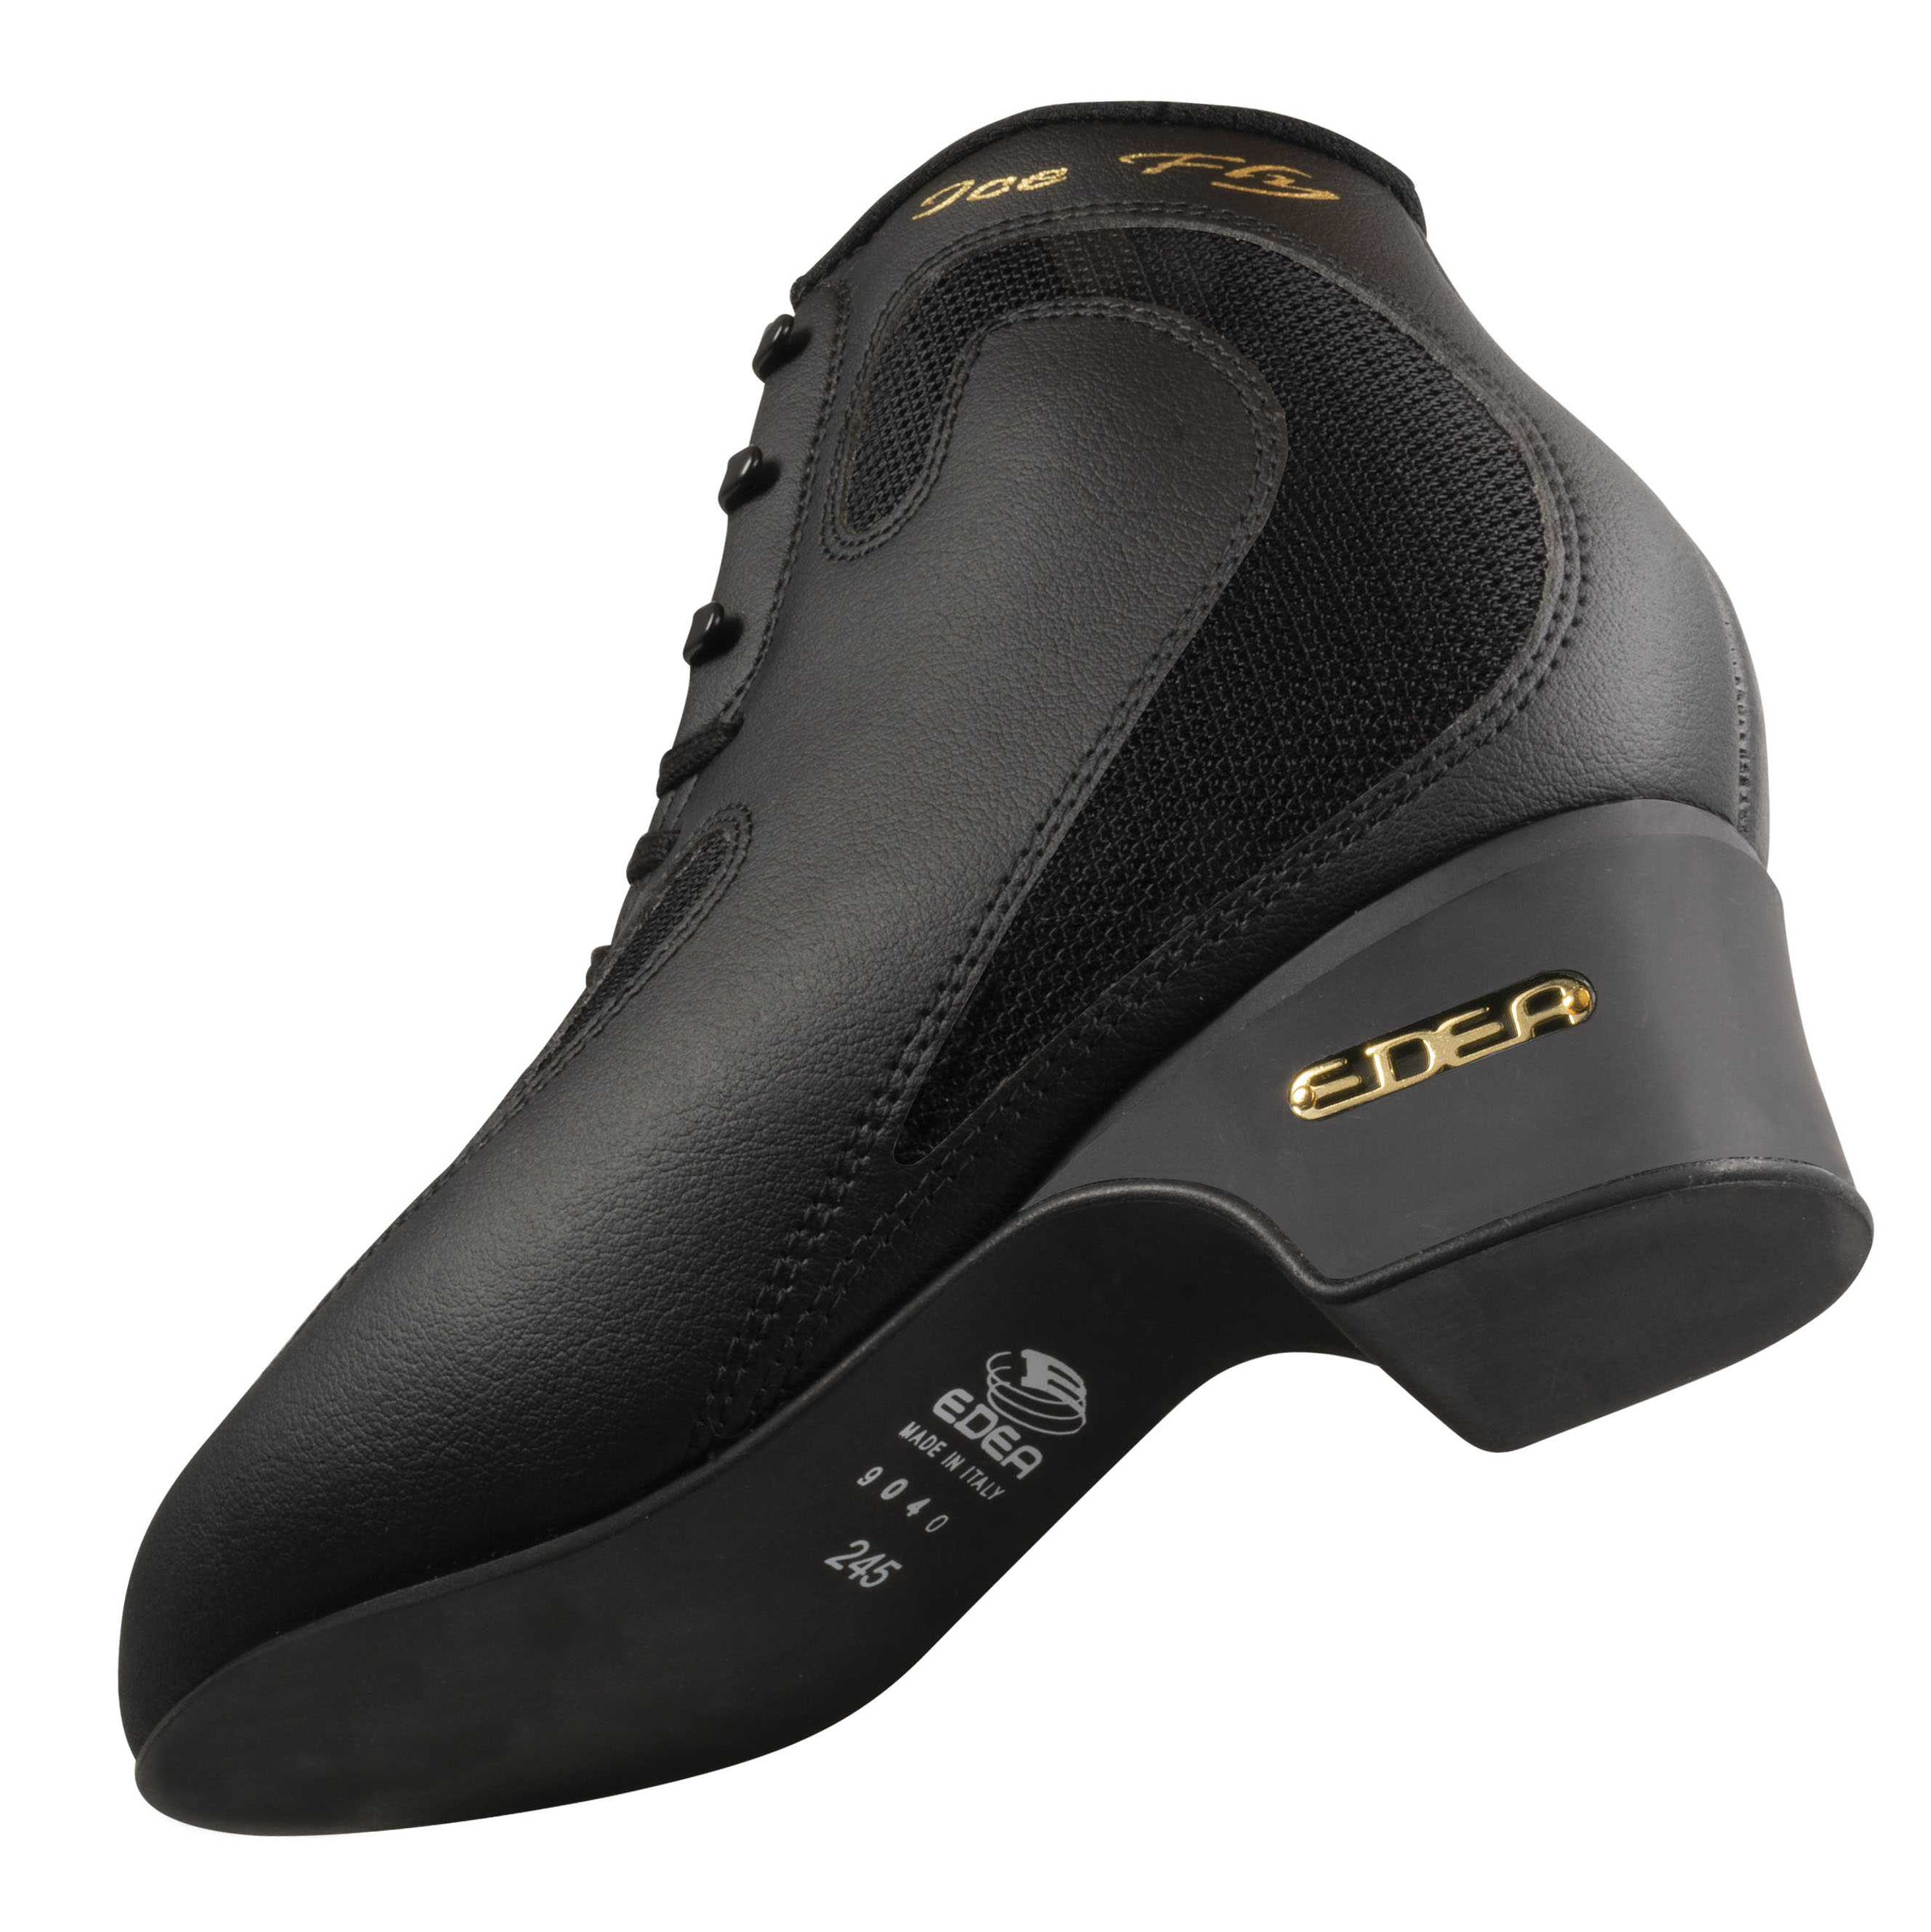 Фигурные ботинки Edea ICE FLY (Черные)